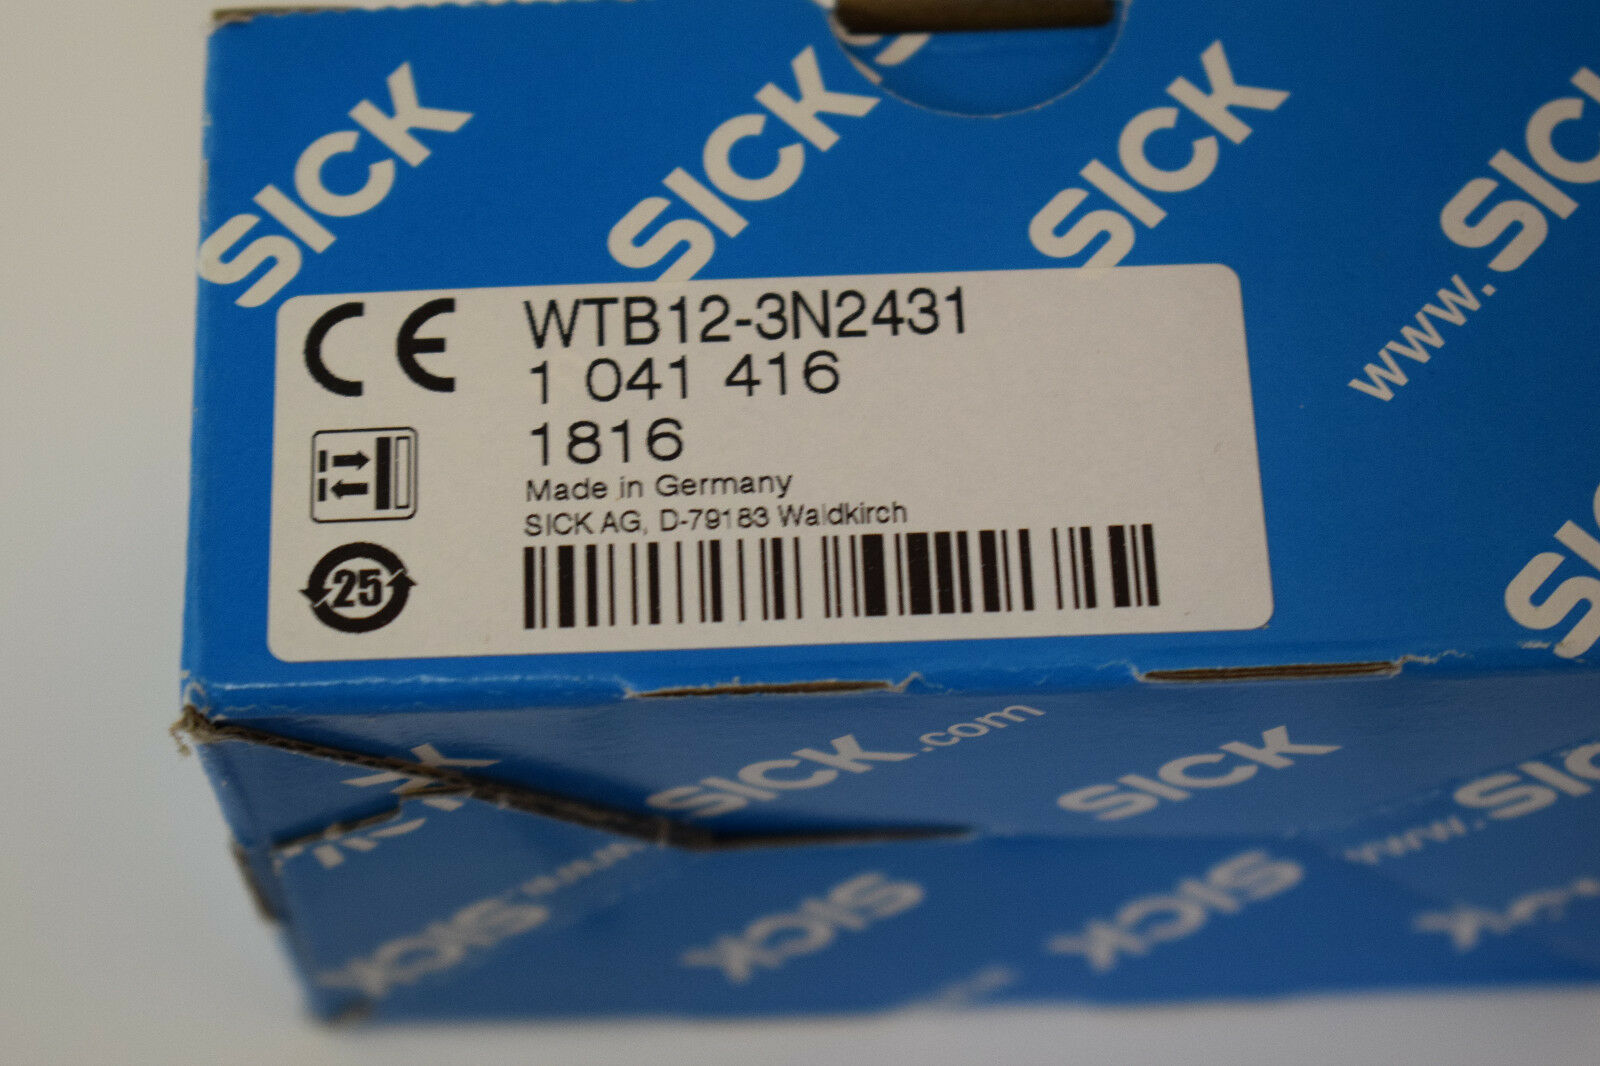 Sick Fotoelektrischer Sensor WTB12-3N2431